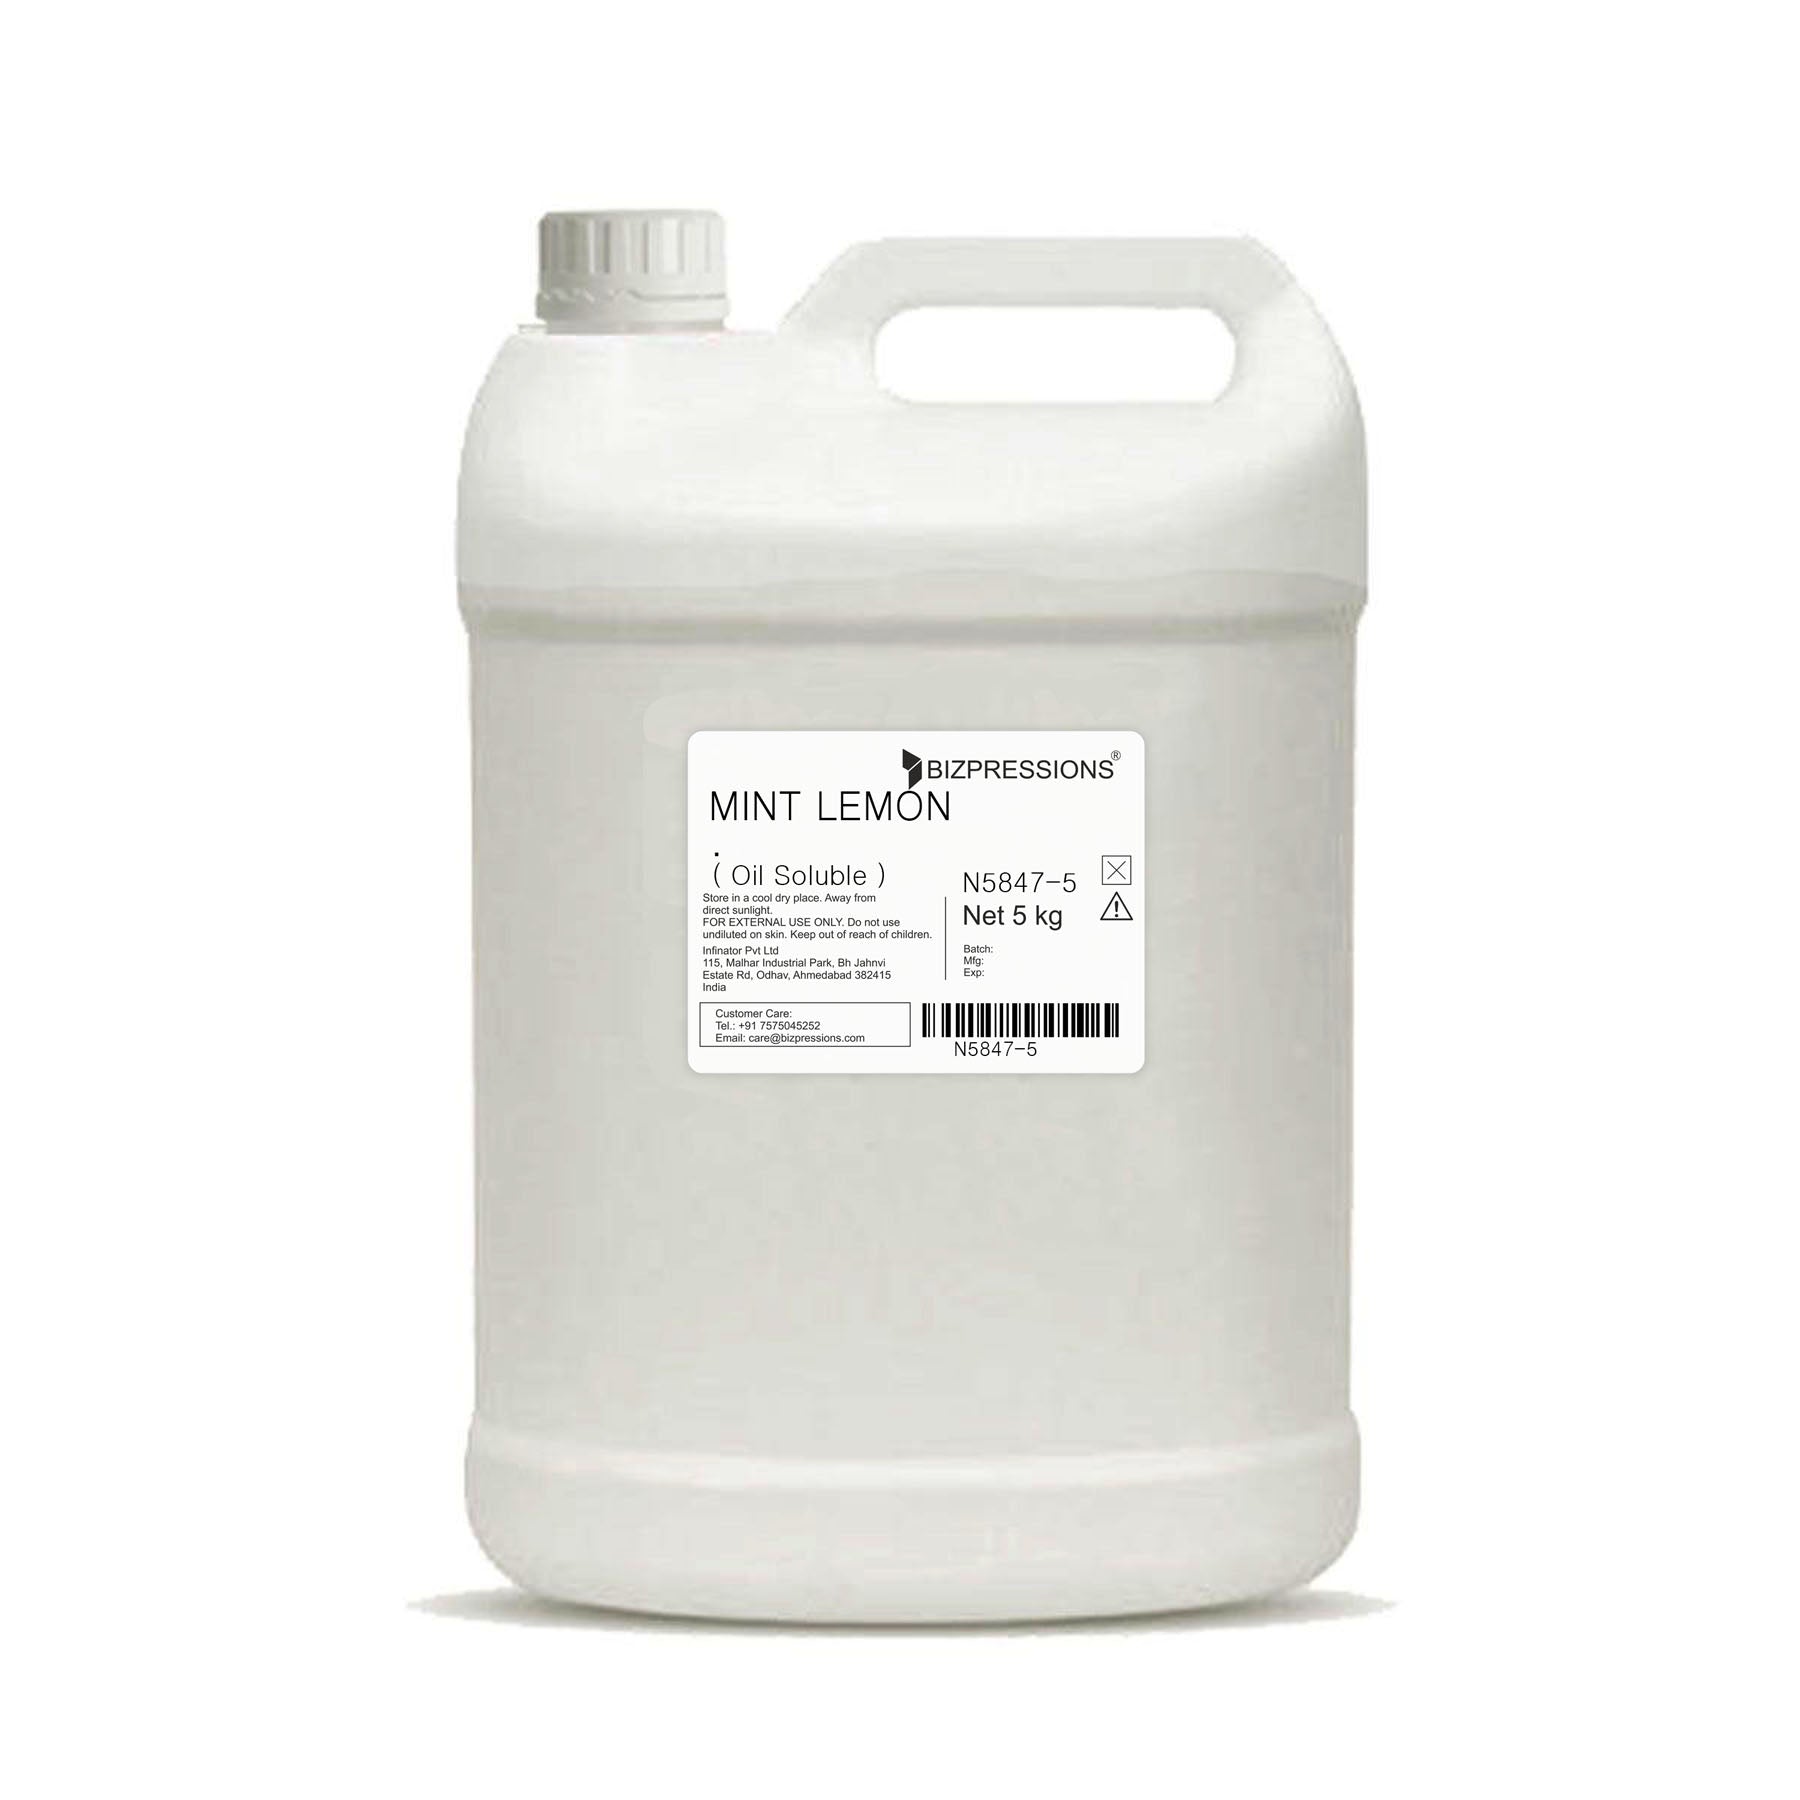 MINT LEMON - Fragrance ( Oil Soluble ) - 5 kg